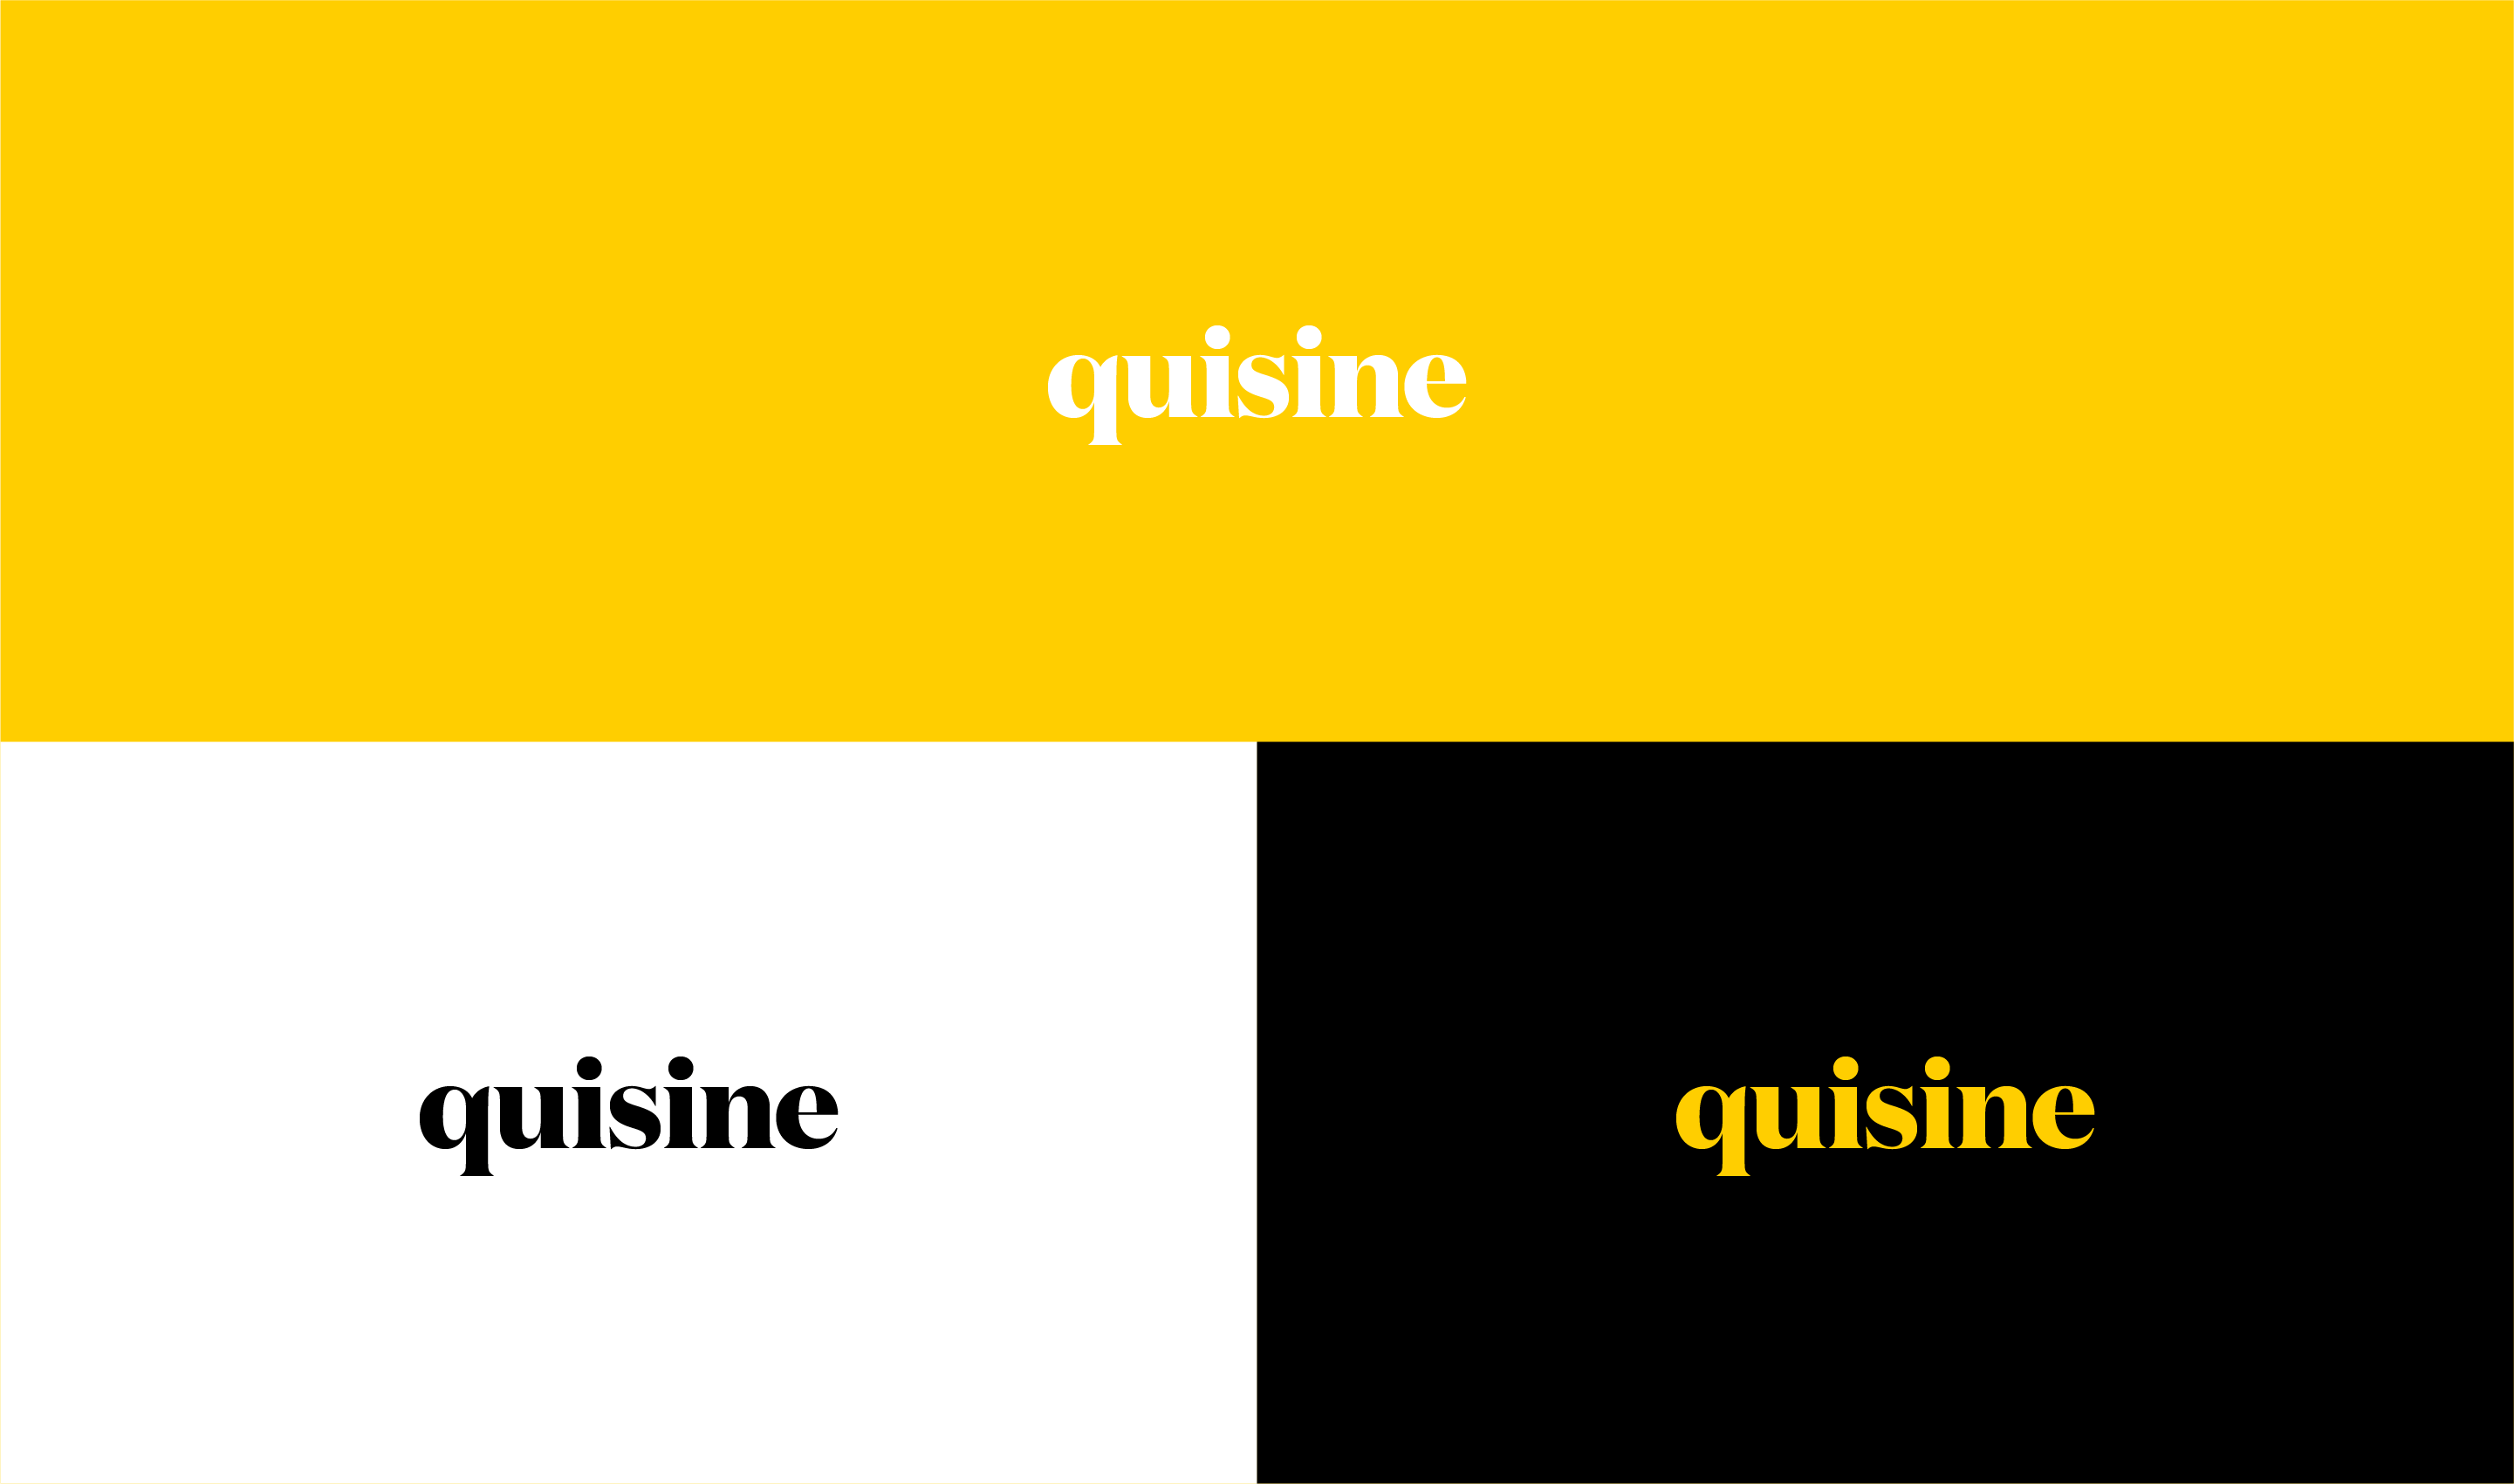 quisine_logo_design